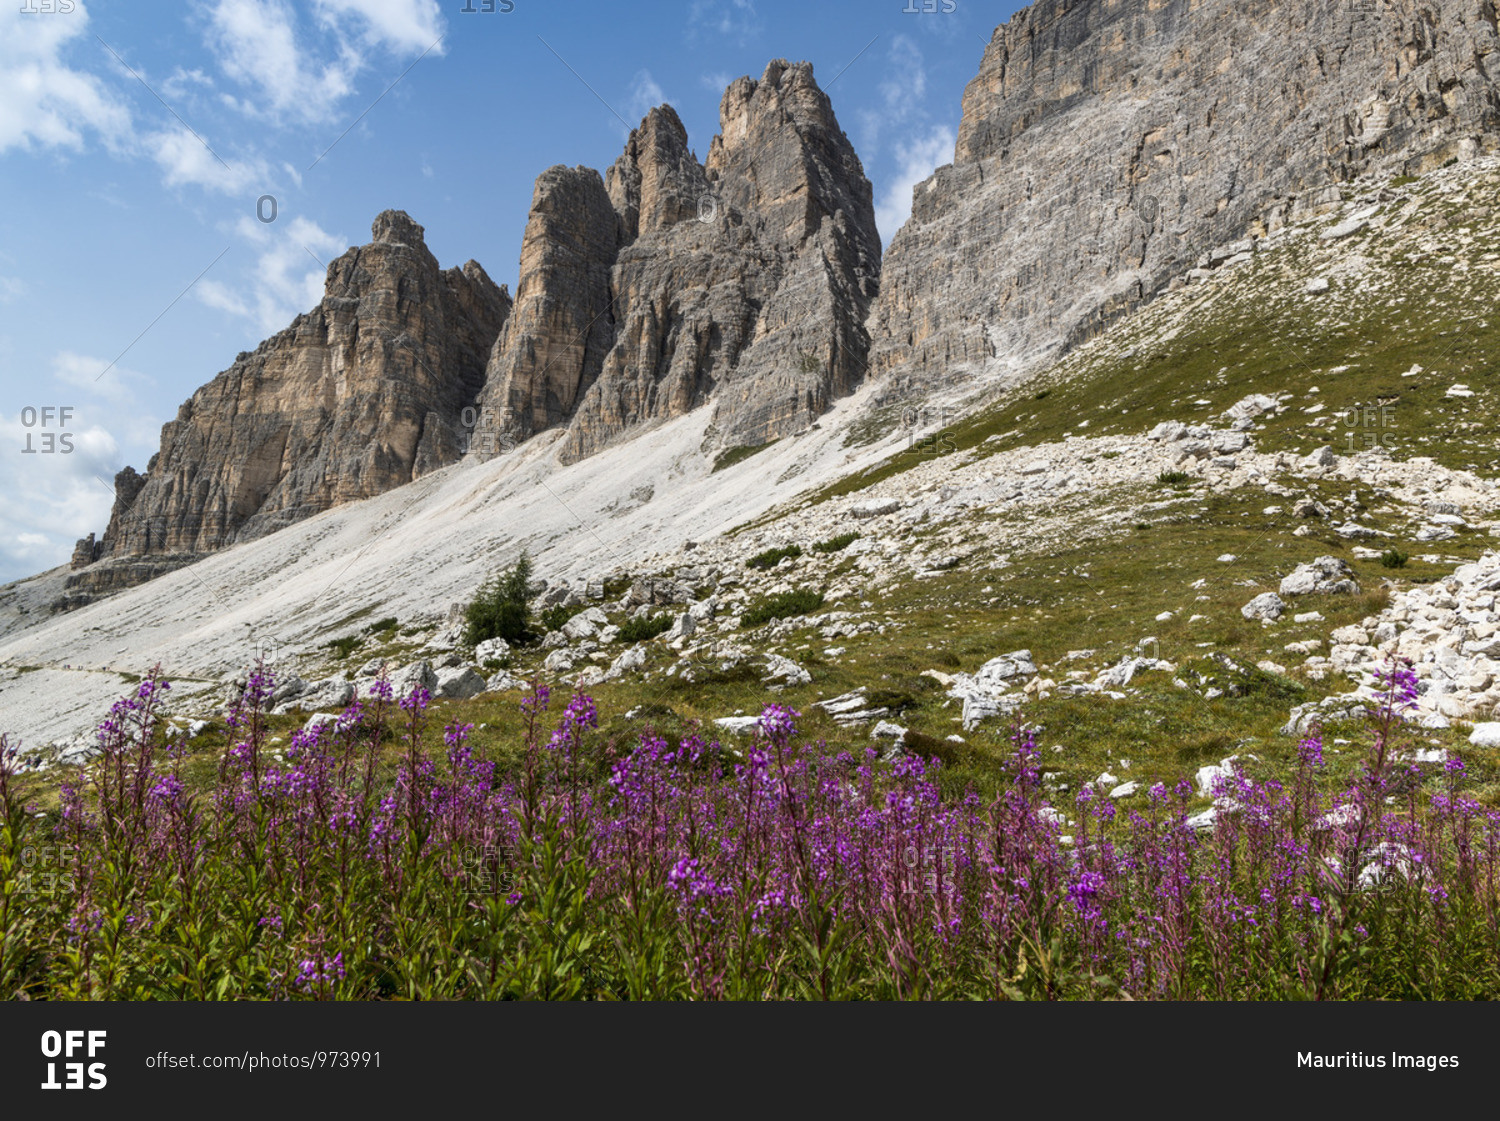 Three Peaks, Three Peaks Nature Park, Sexten Dolomites, South Tyrol, Italy